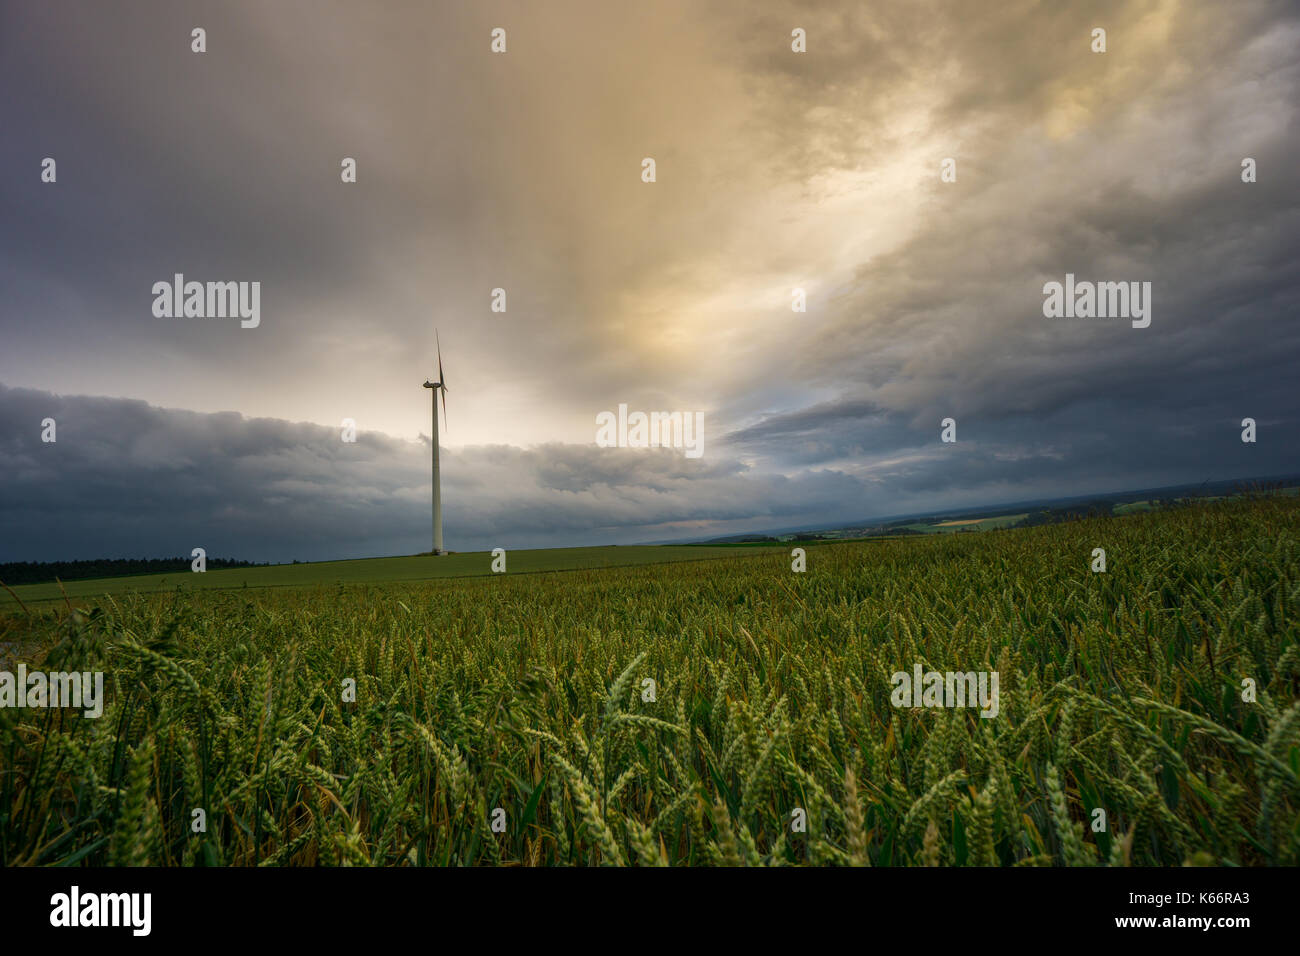 Deutschland - Single Wind Generator auf endlos weite grüne Felder von Korn in der Dämmerung mit dramatischen Himmel Stockfoto